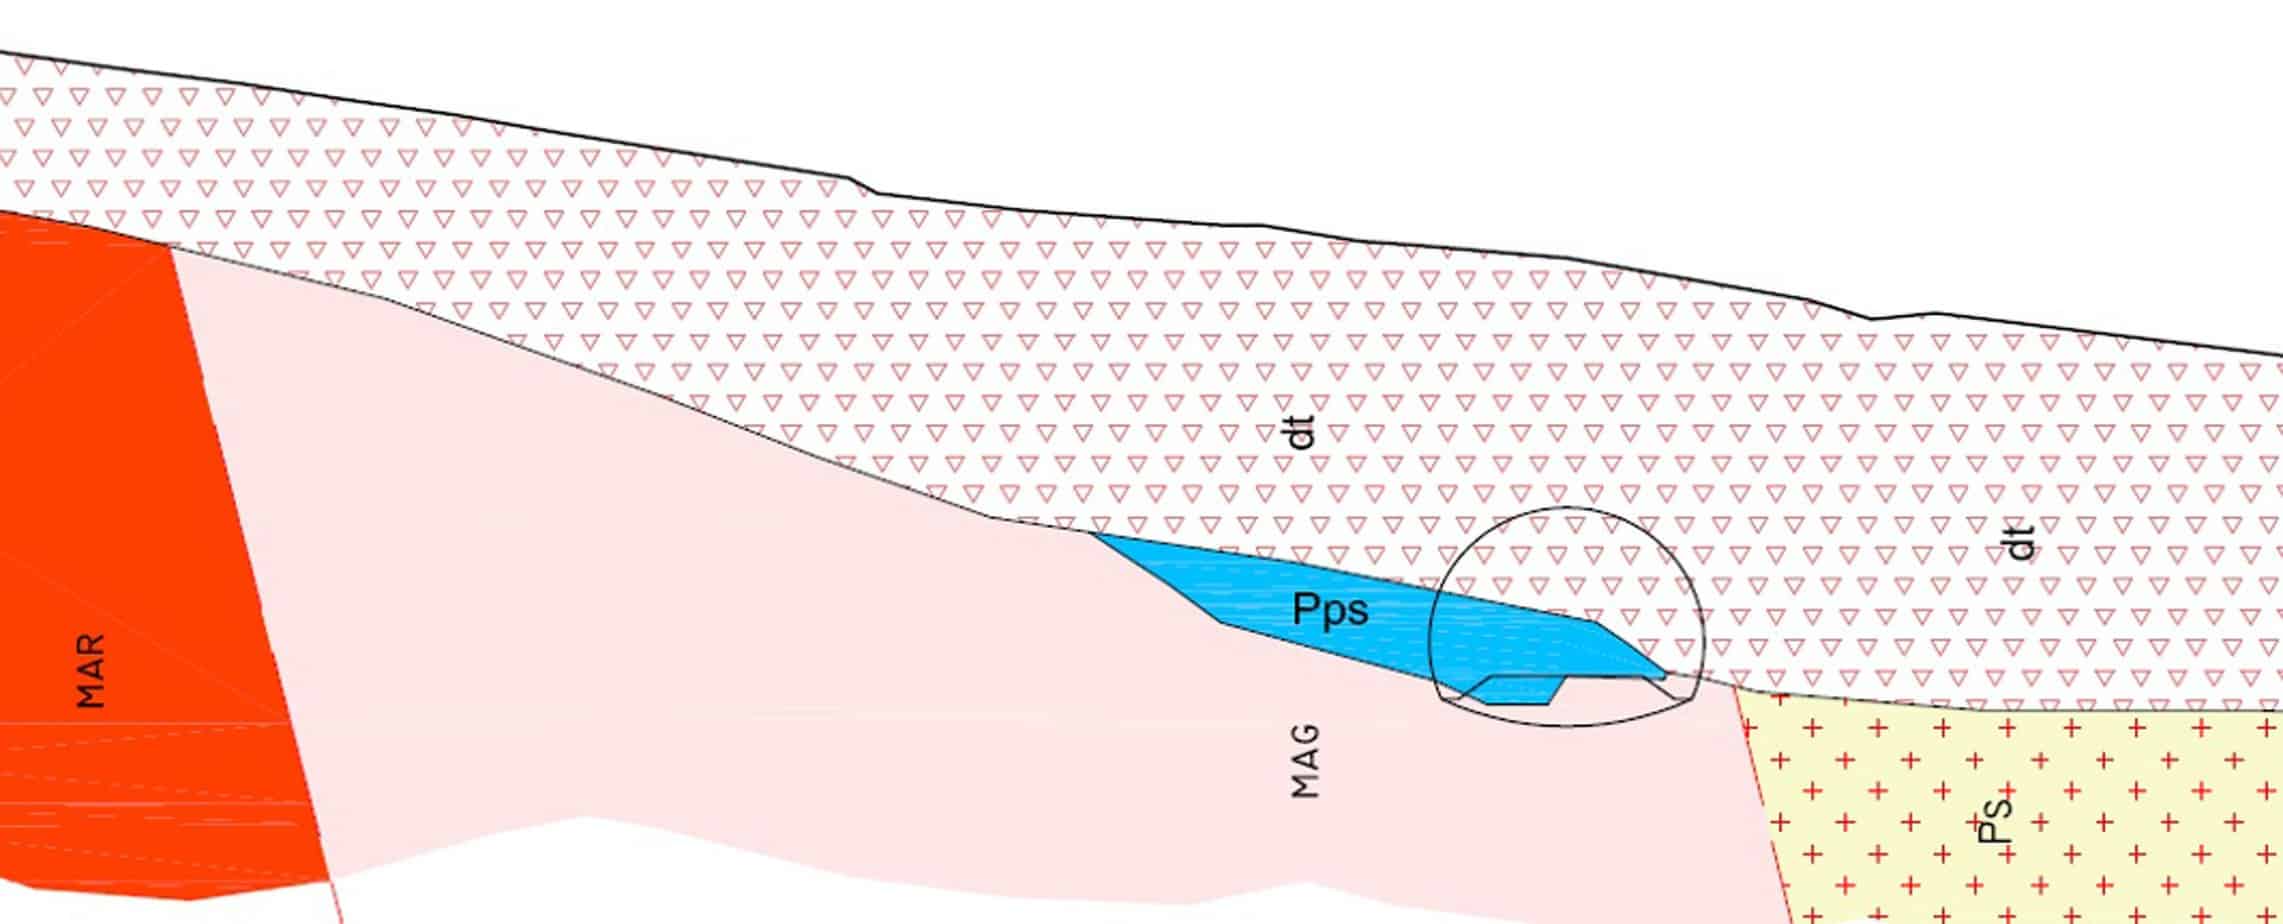 La sezione geologica longitudinale presso l’imbocco Sud. L’unità (dt) rappresenta i limi poco consistenti mentre l’unità Pps rappresenta ciottoli poligenici immersi in matrice sabbiosa estremamente addensata